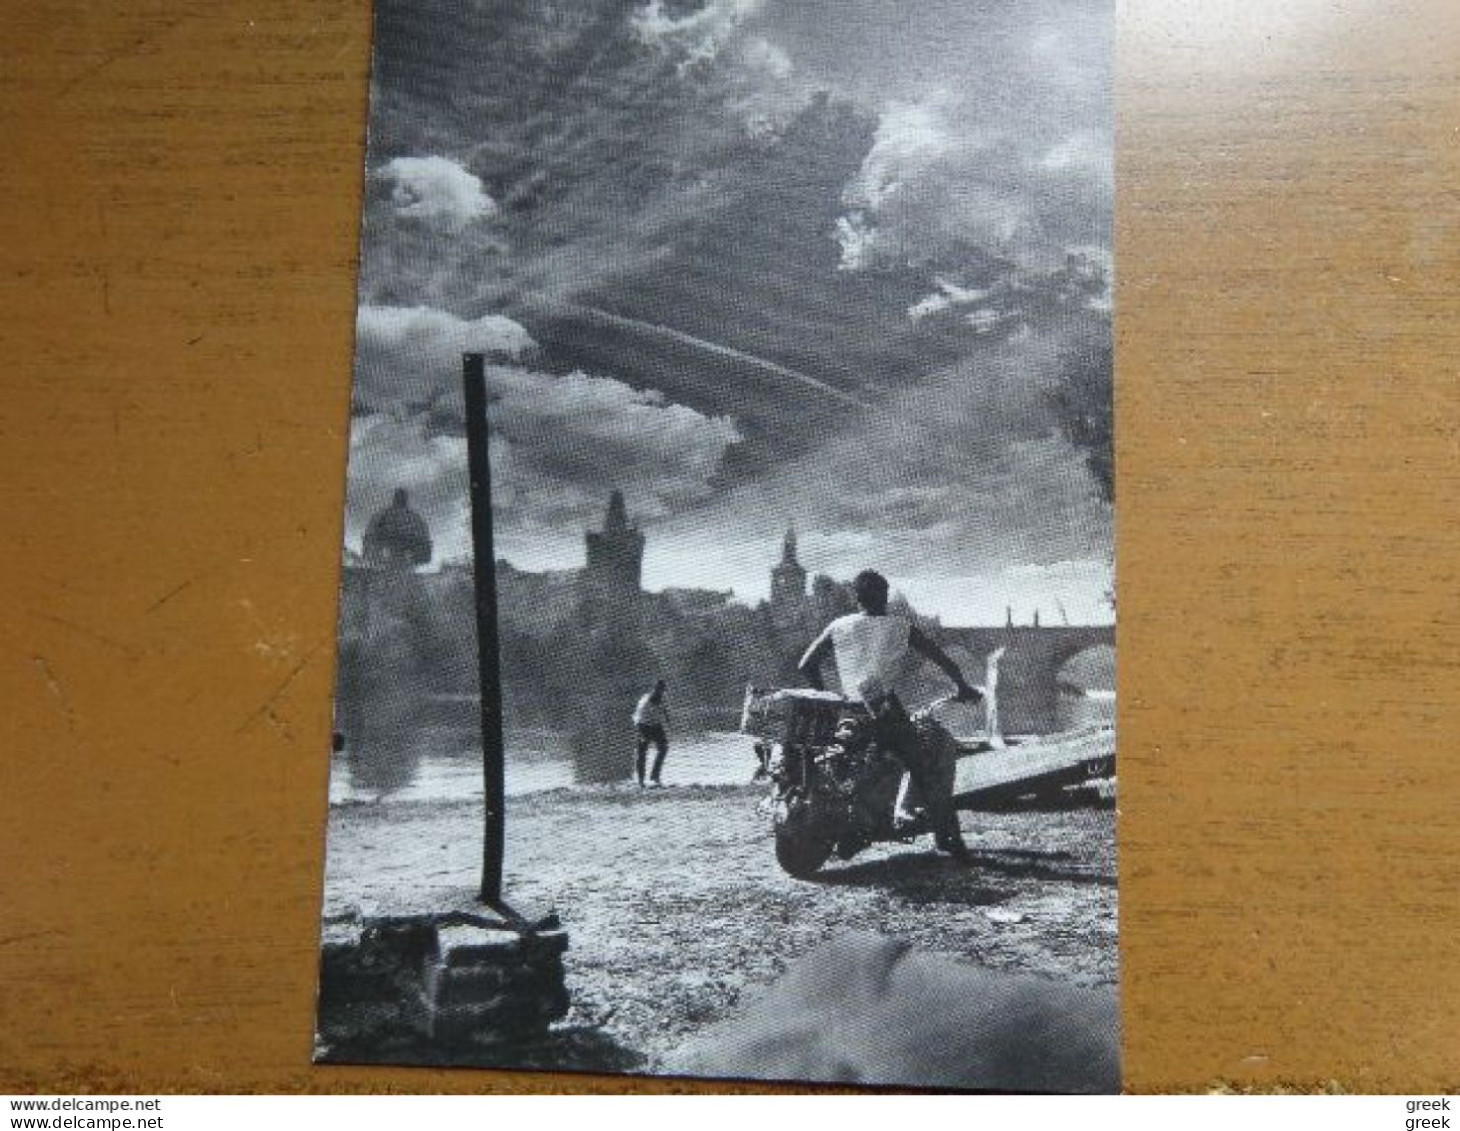 20 postkaarten van Jan Saudek (fotografie, naakt, sexy) zie foto's --> onbeschreven